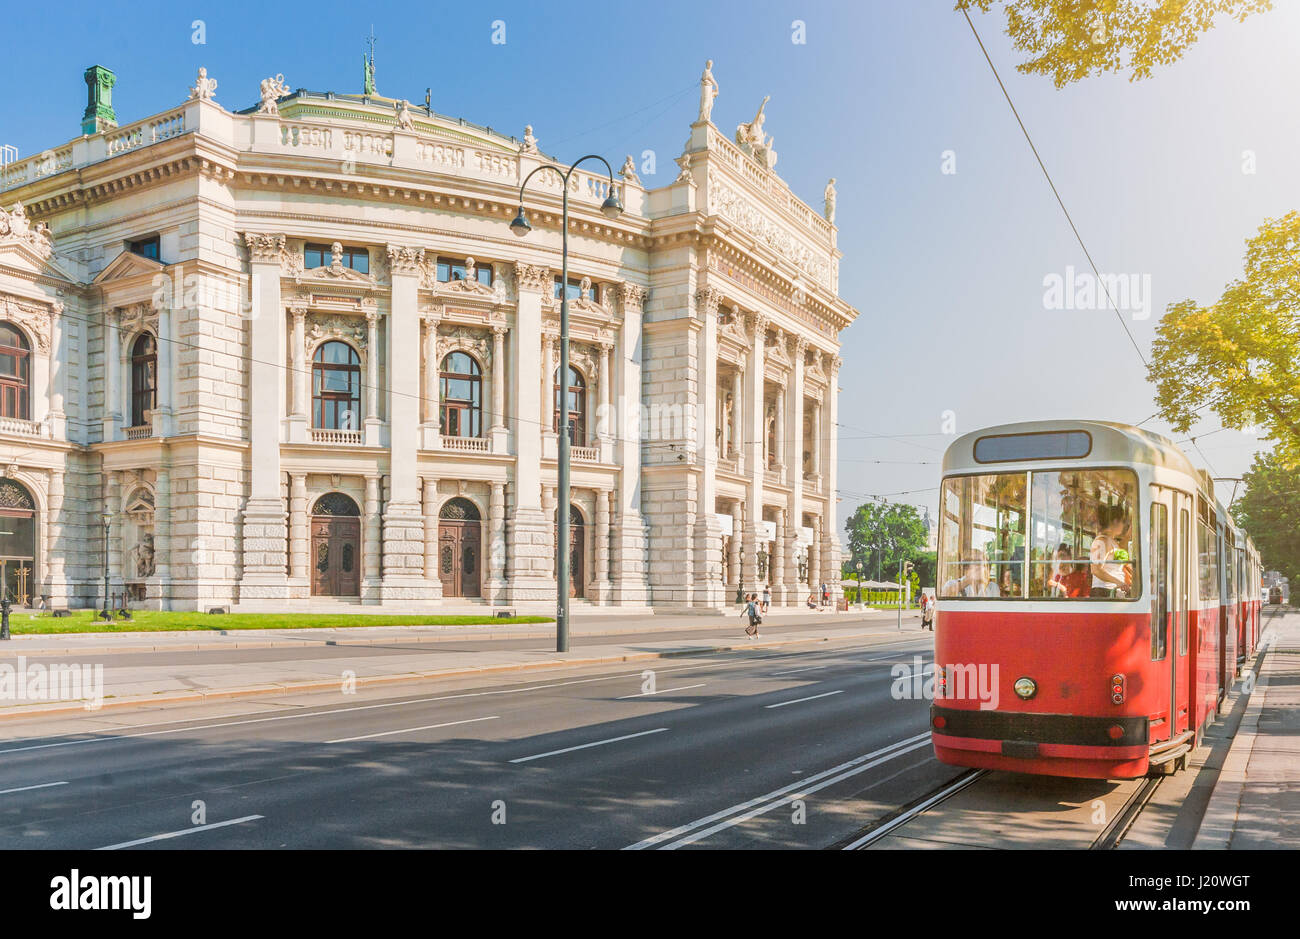 Visualizzazione classica del celebre Wiener Ringstrasse con Burgtheater storico e tradizionale rosso tram elettrico su una bella giornata di sole a Vienna, in Austria Foto Stock